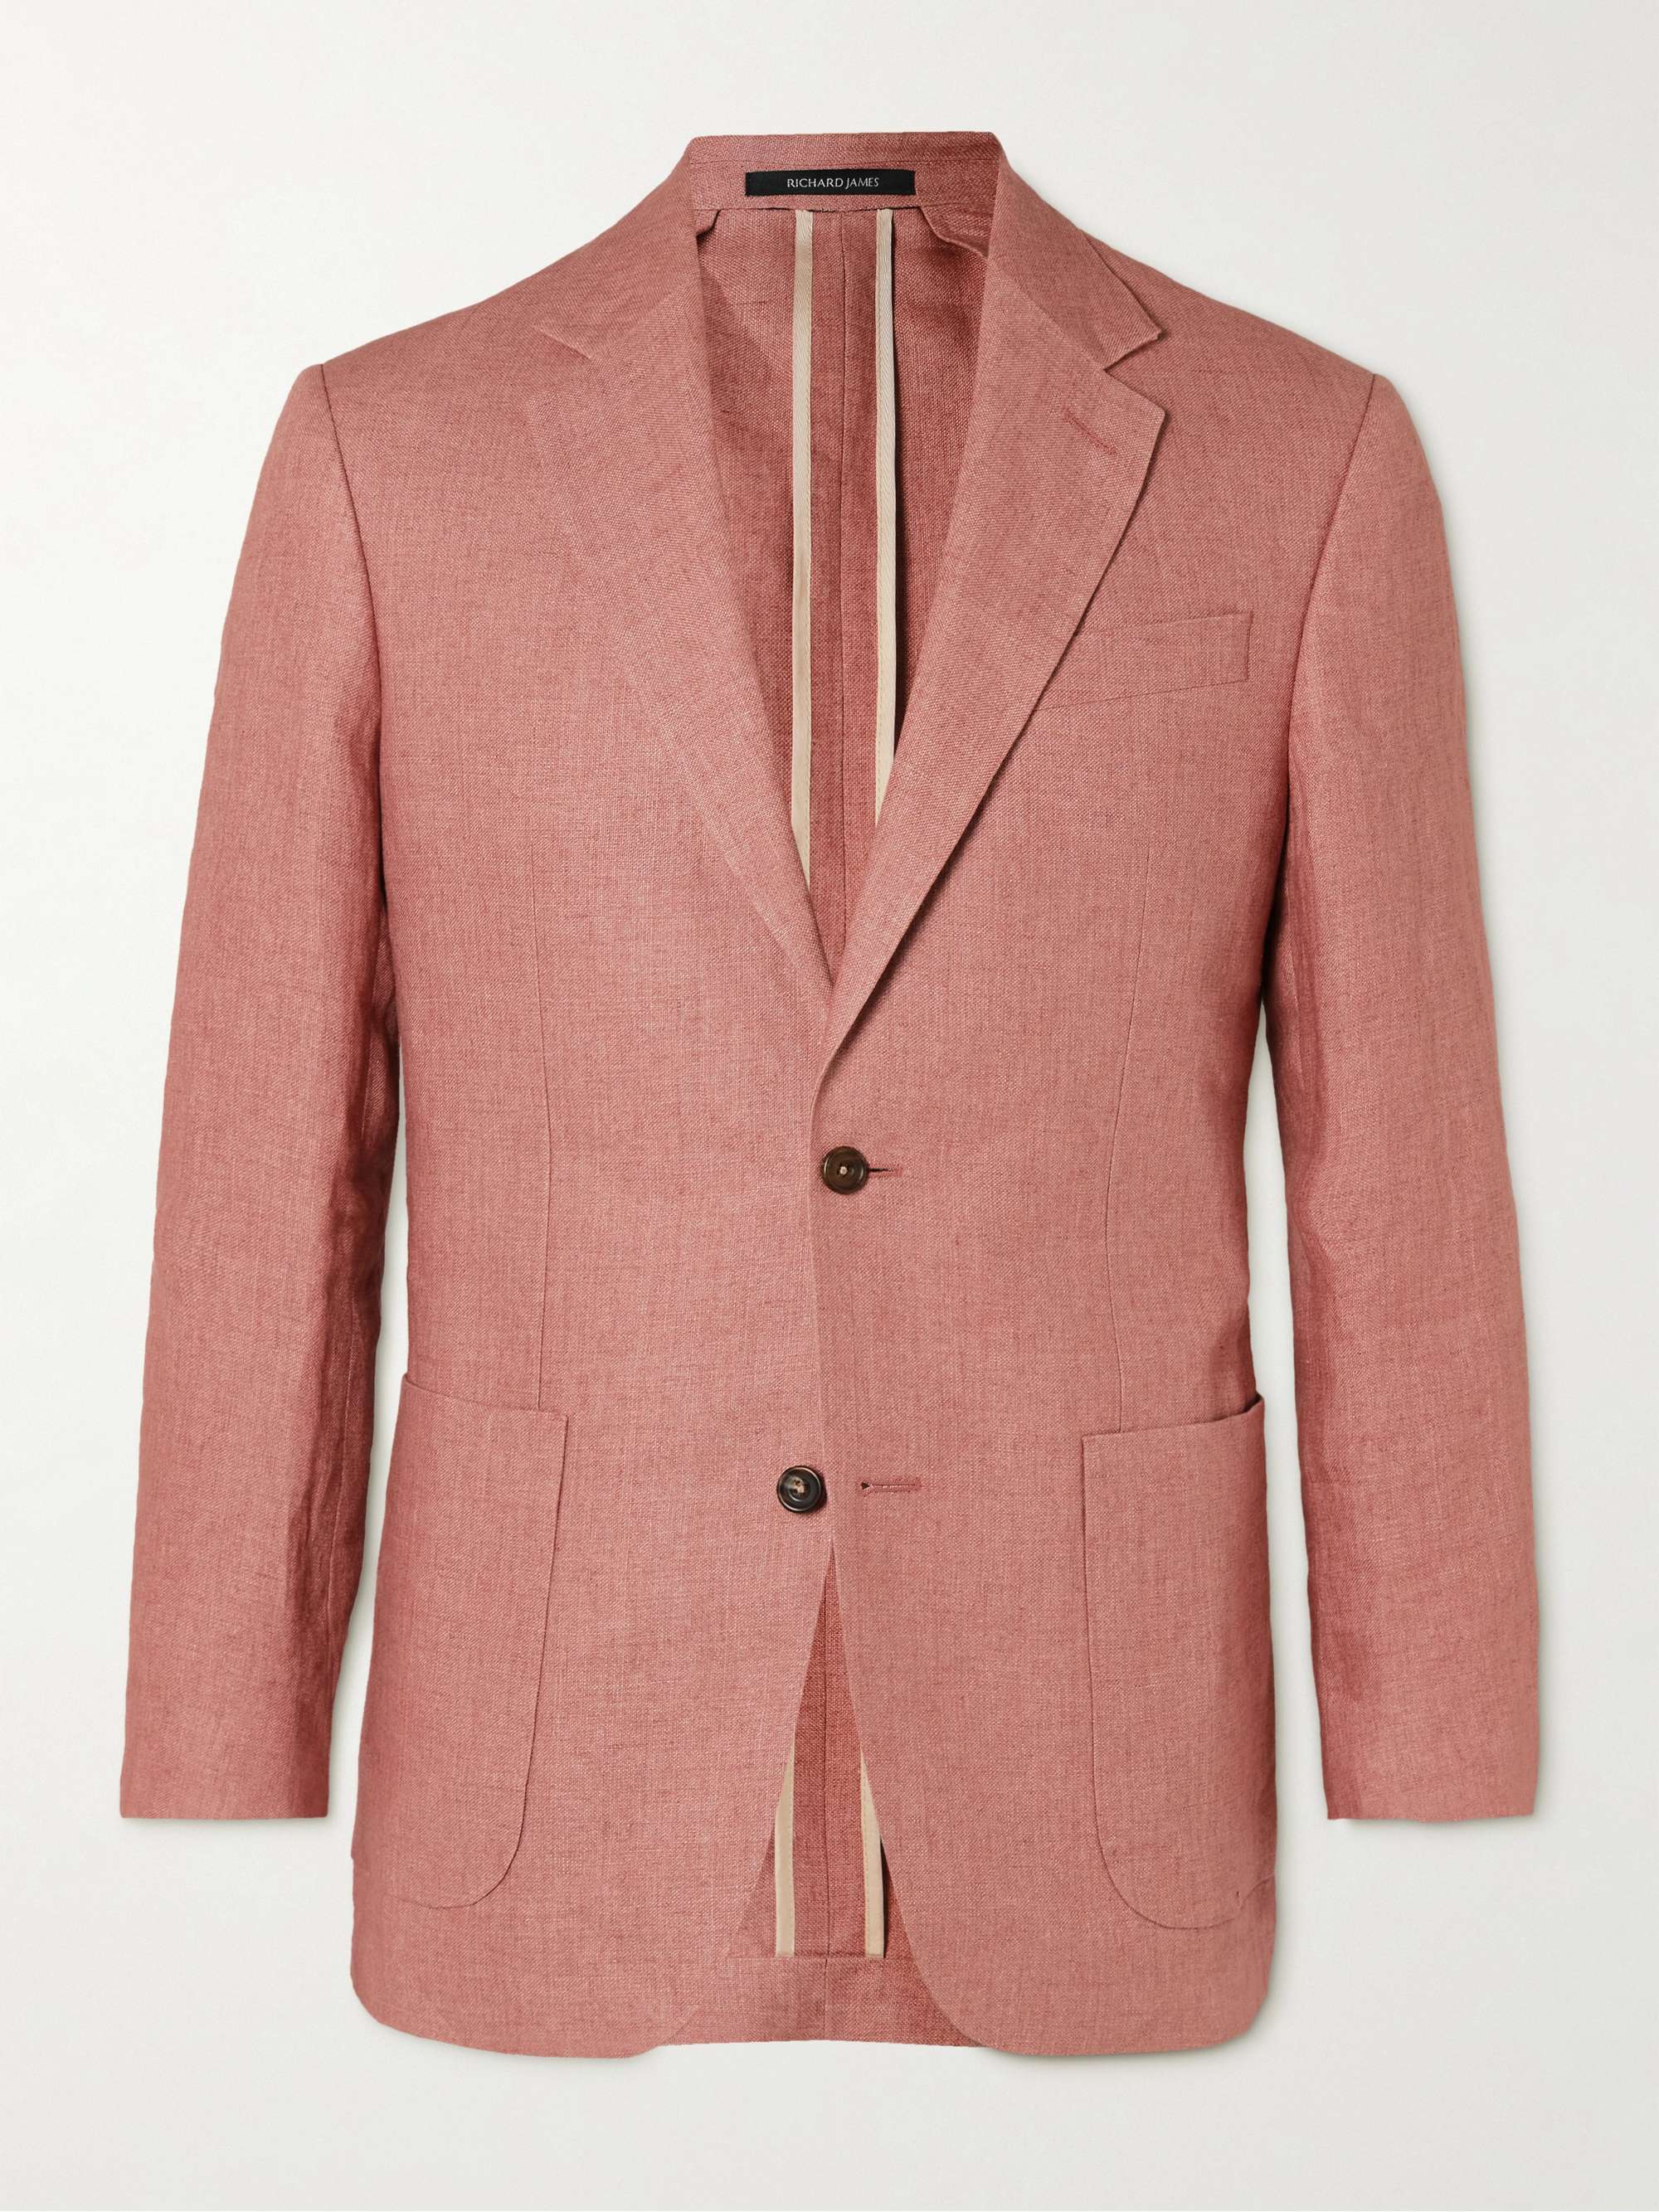 RICHARD JAMES Unstructured Linen Suit Jacket